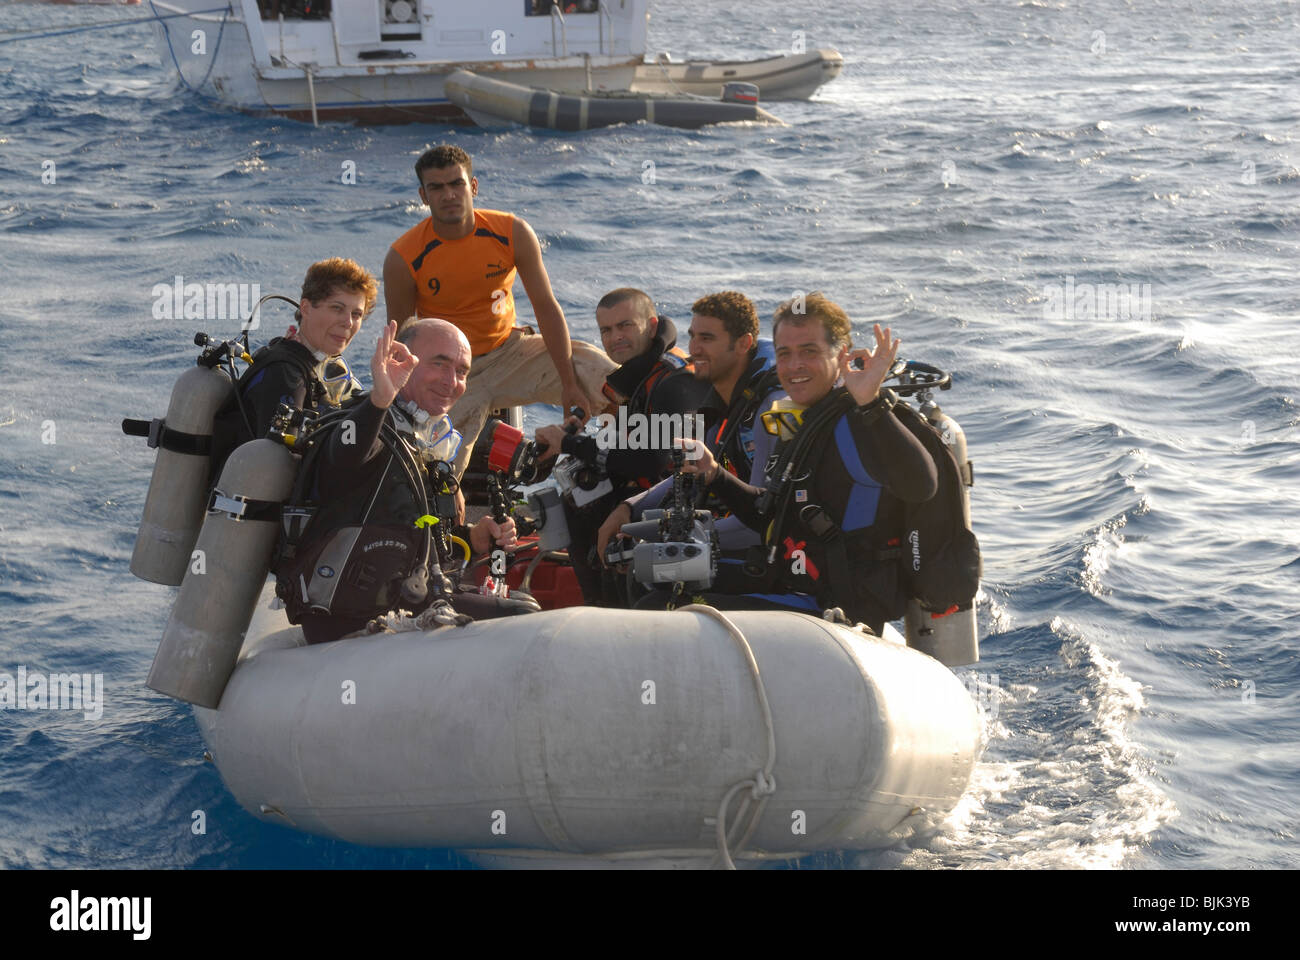 Heureux plongeurs sur un bateau gonflable prêt à plonger Banque D'Images